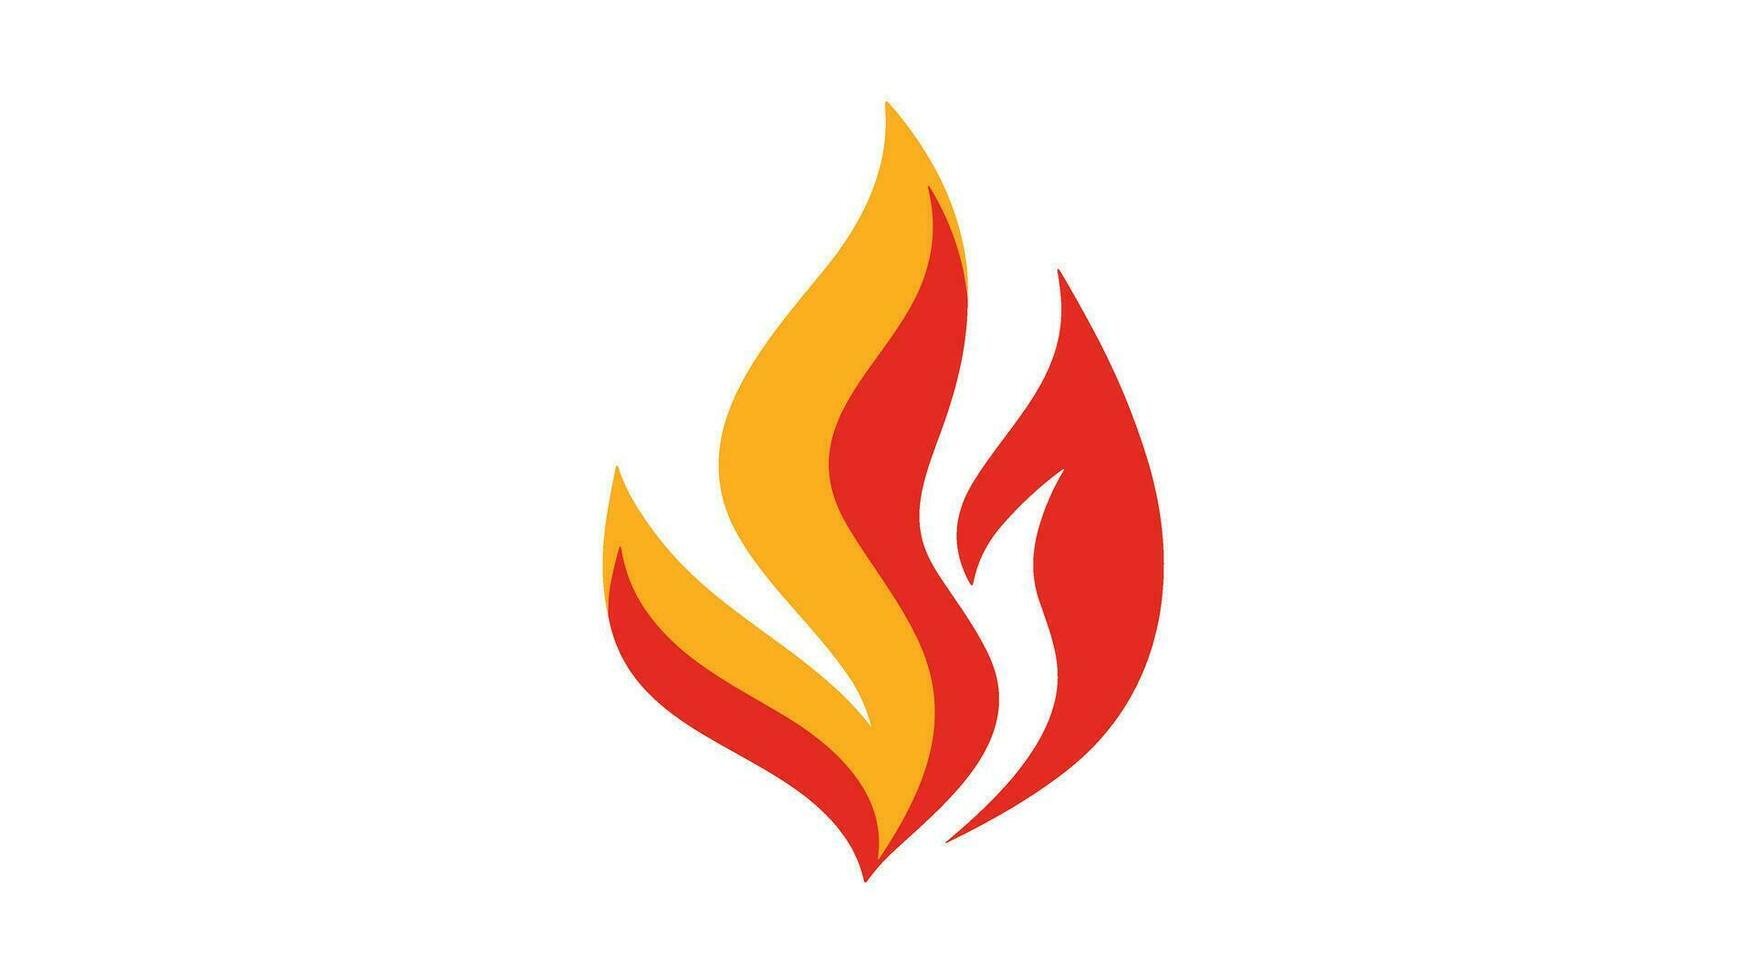 flameante elegancia cautivador fuego bandera imagen para atractivo visual experiencias vector